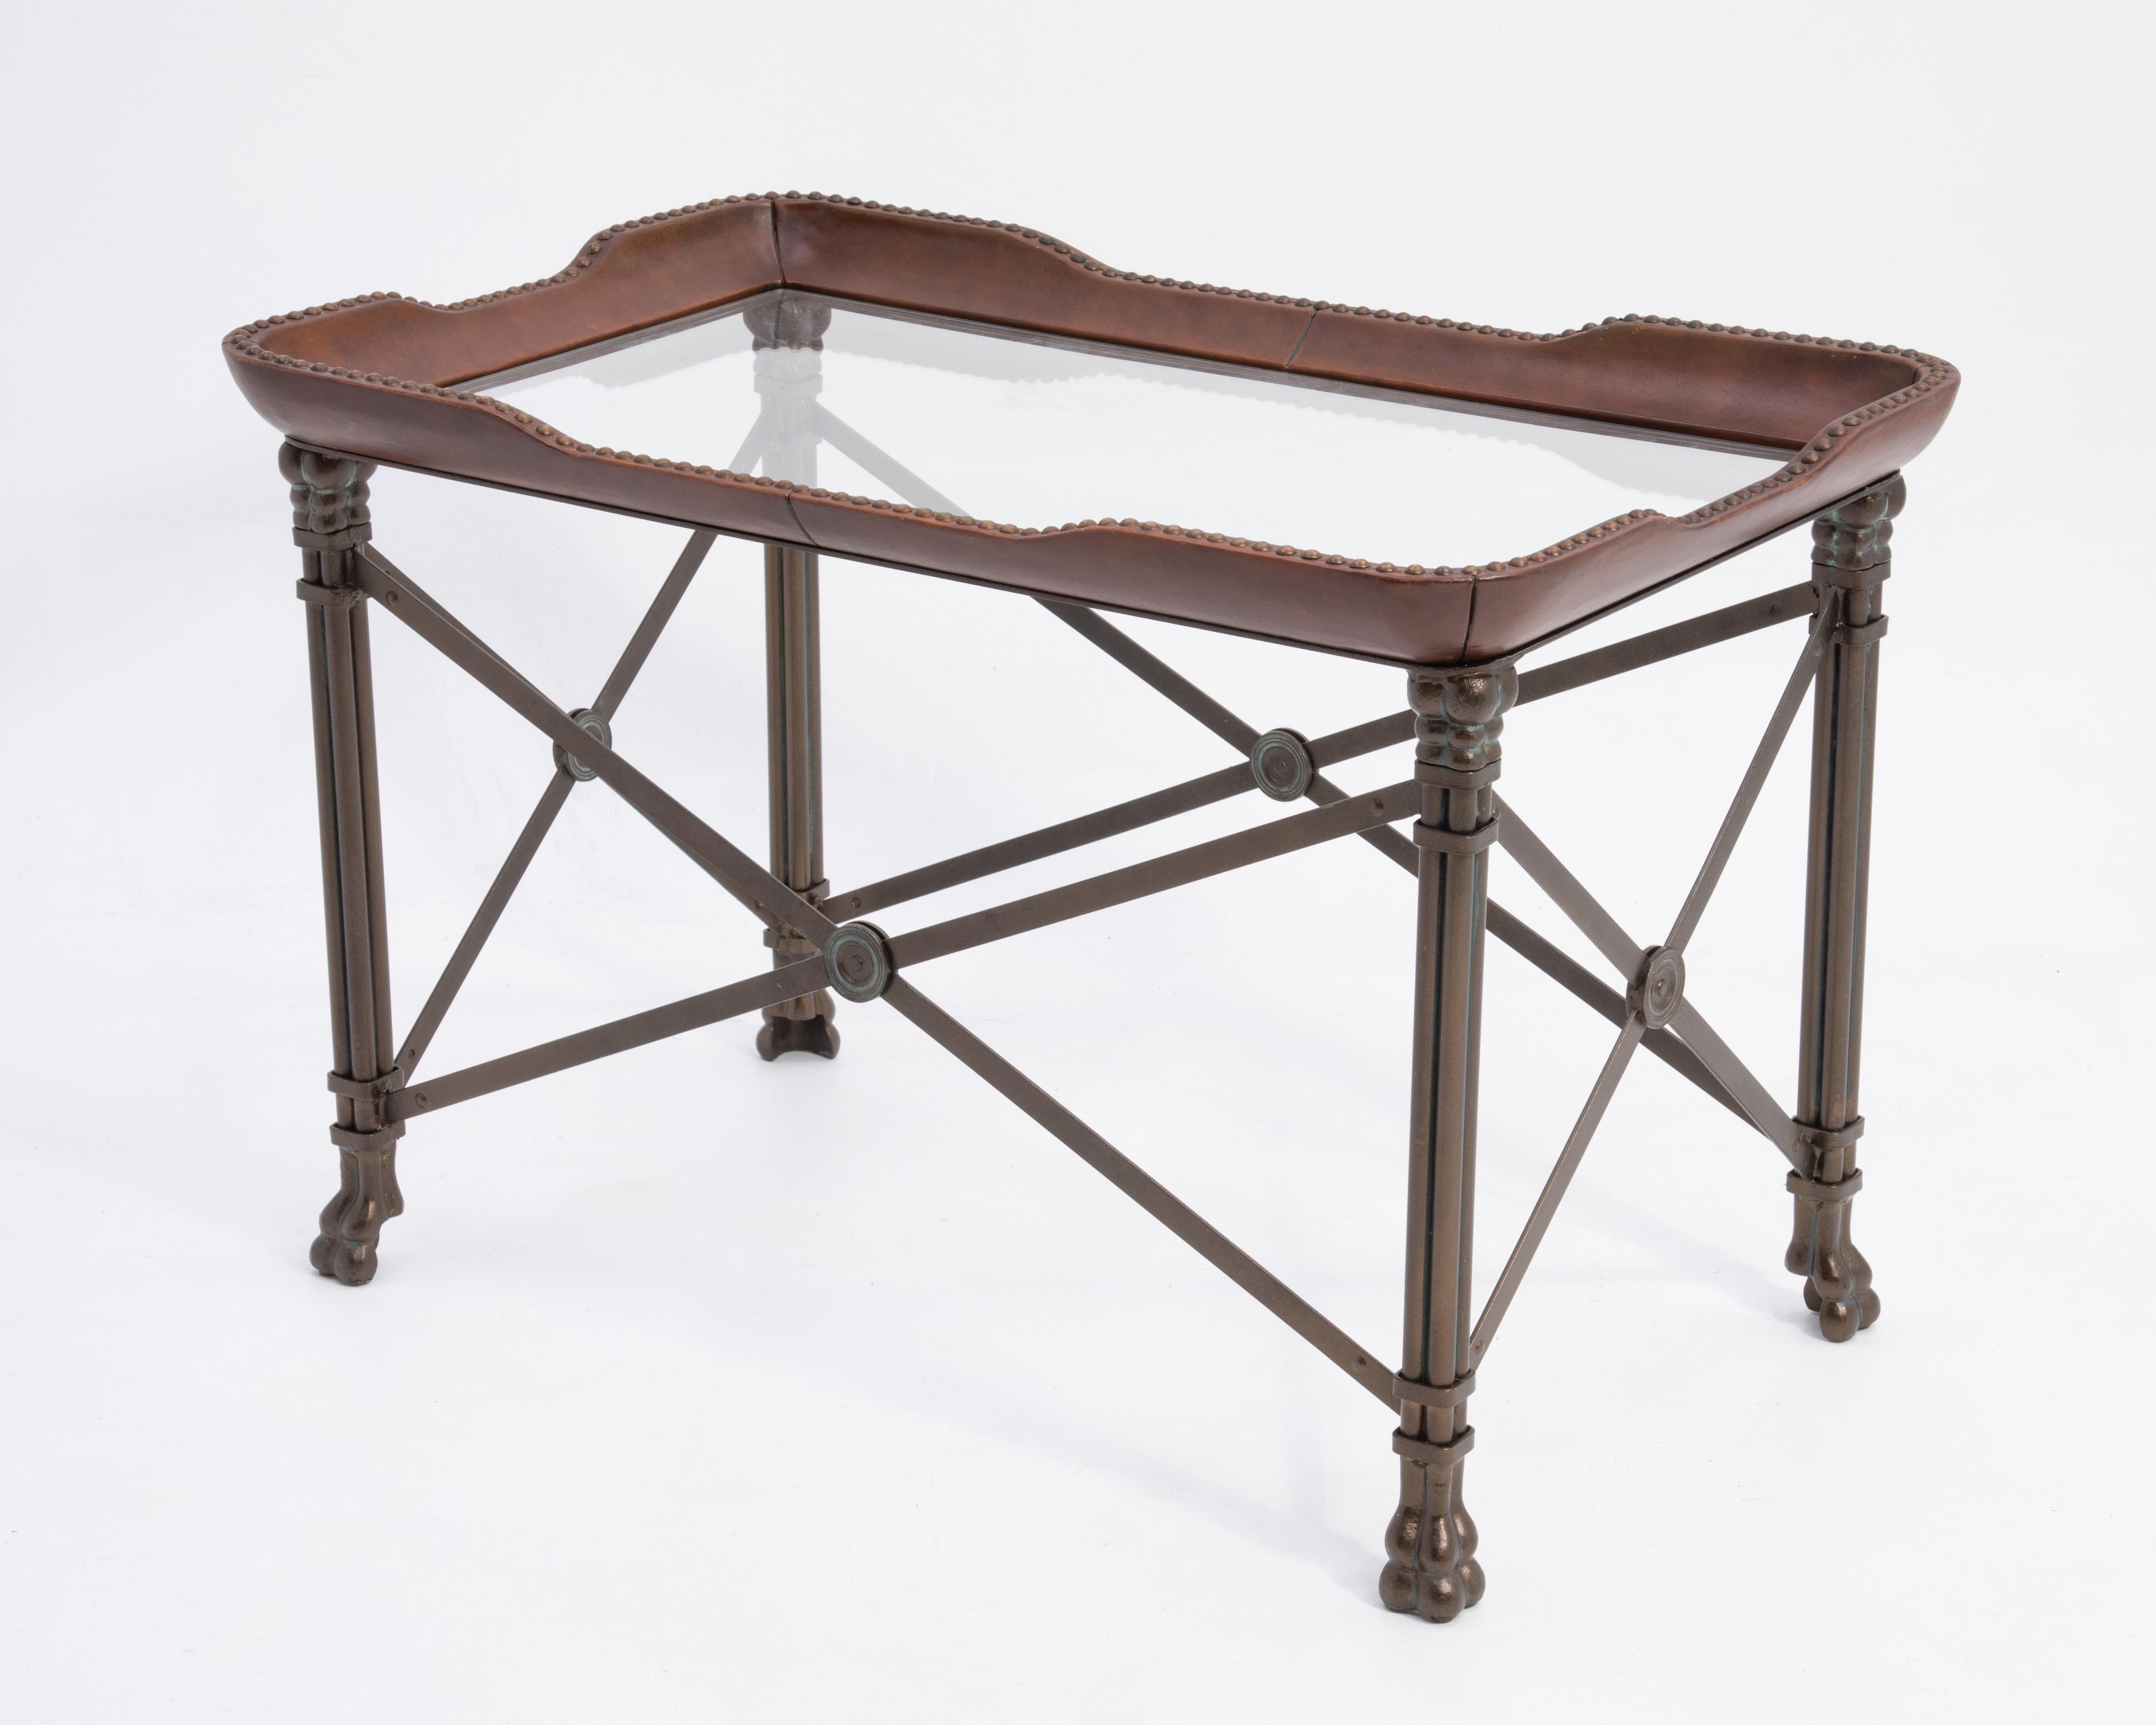 Une table vintage Maitland Smith Regency qui servira de table basse, de table d'appoint ou de table d'appoint. La table en métal bronzé avec des accents vert vert, a un plateau en cuir avec des têtes de clous antiques, un insert en verre et des